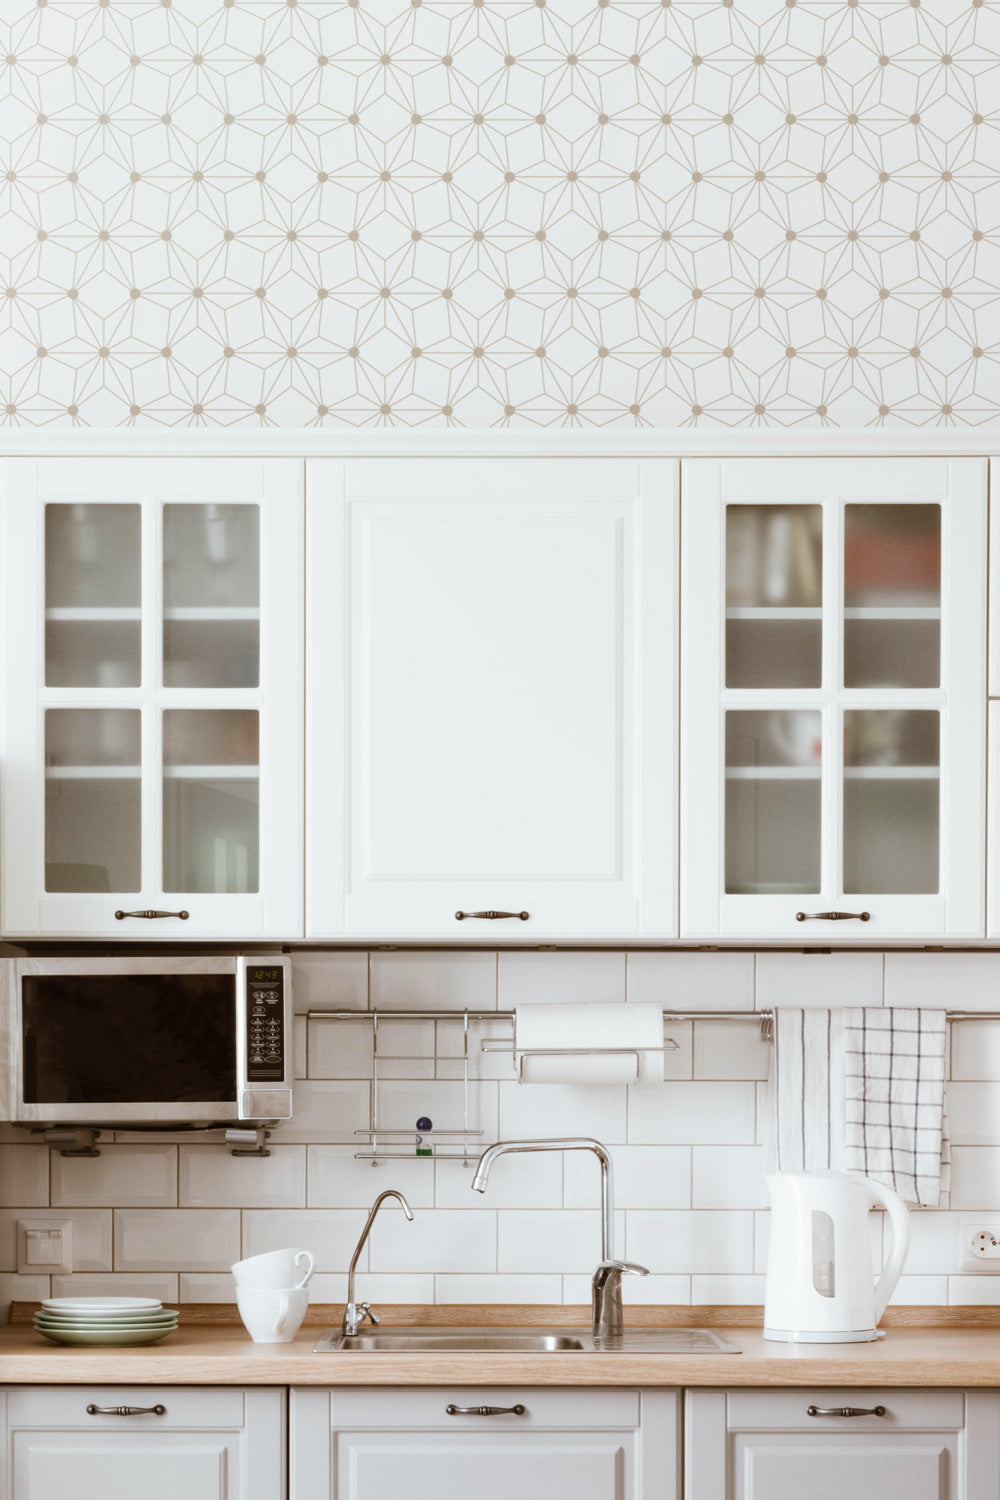 Minimalistic Geometric Pattern Kitchen Wallpaper